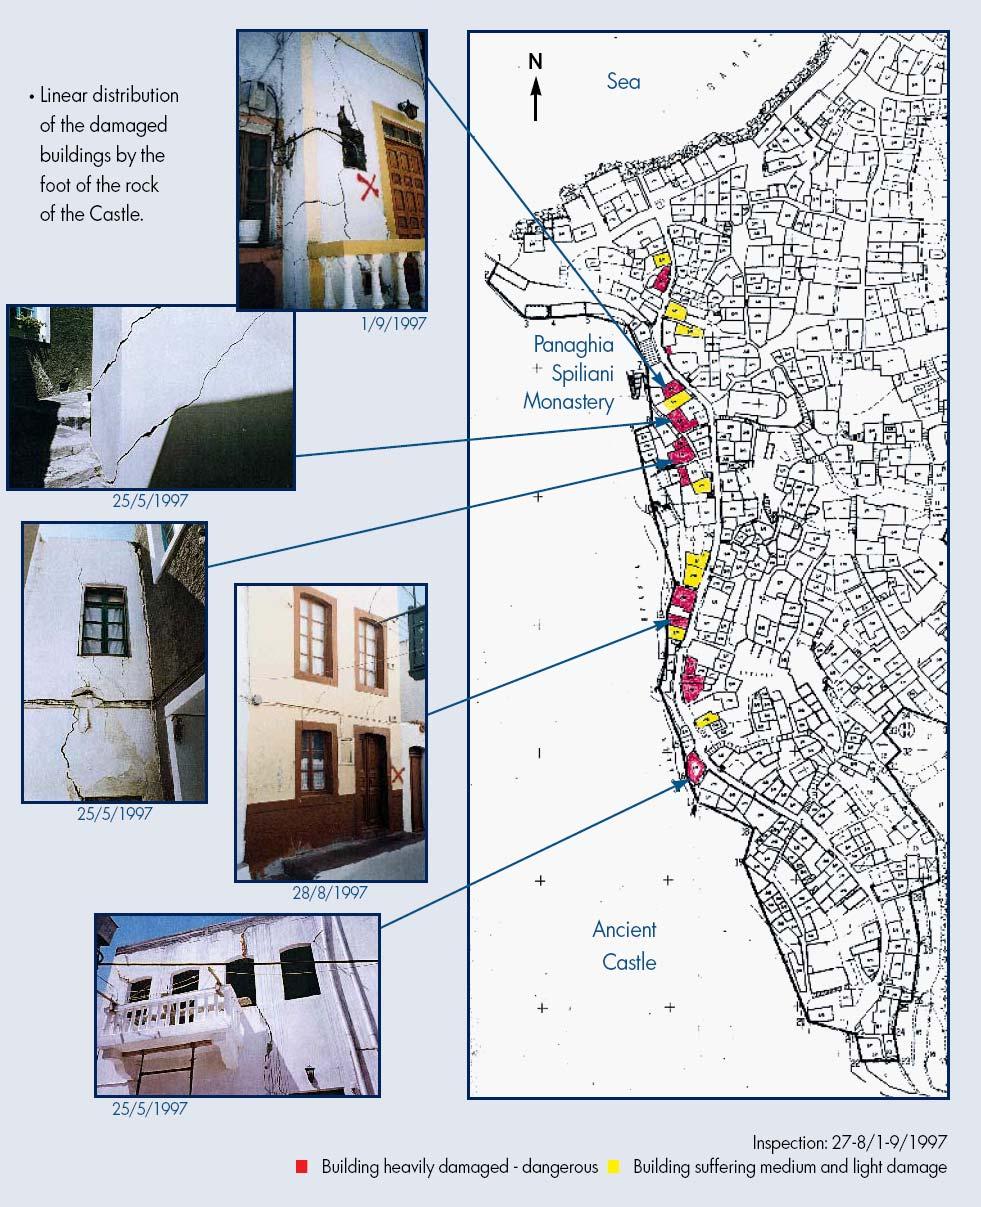 Εικόνα 12 Οι ζημιές στο Μανδράκι με την γραμμική κατανομή των κτηρίων που υπέστησαν ζημιές, παράλληλα στο ενεργό ρήγμα. (Ιoannidis, 1998).